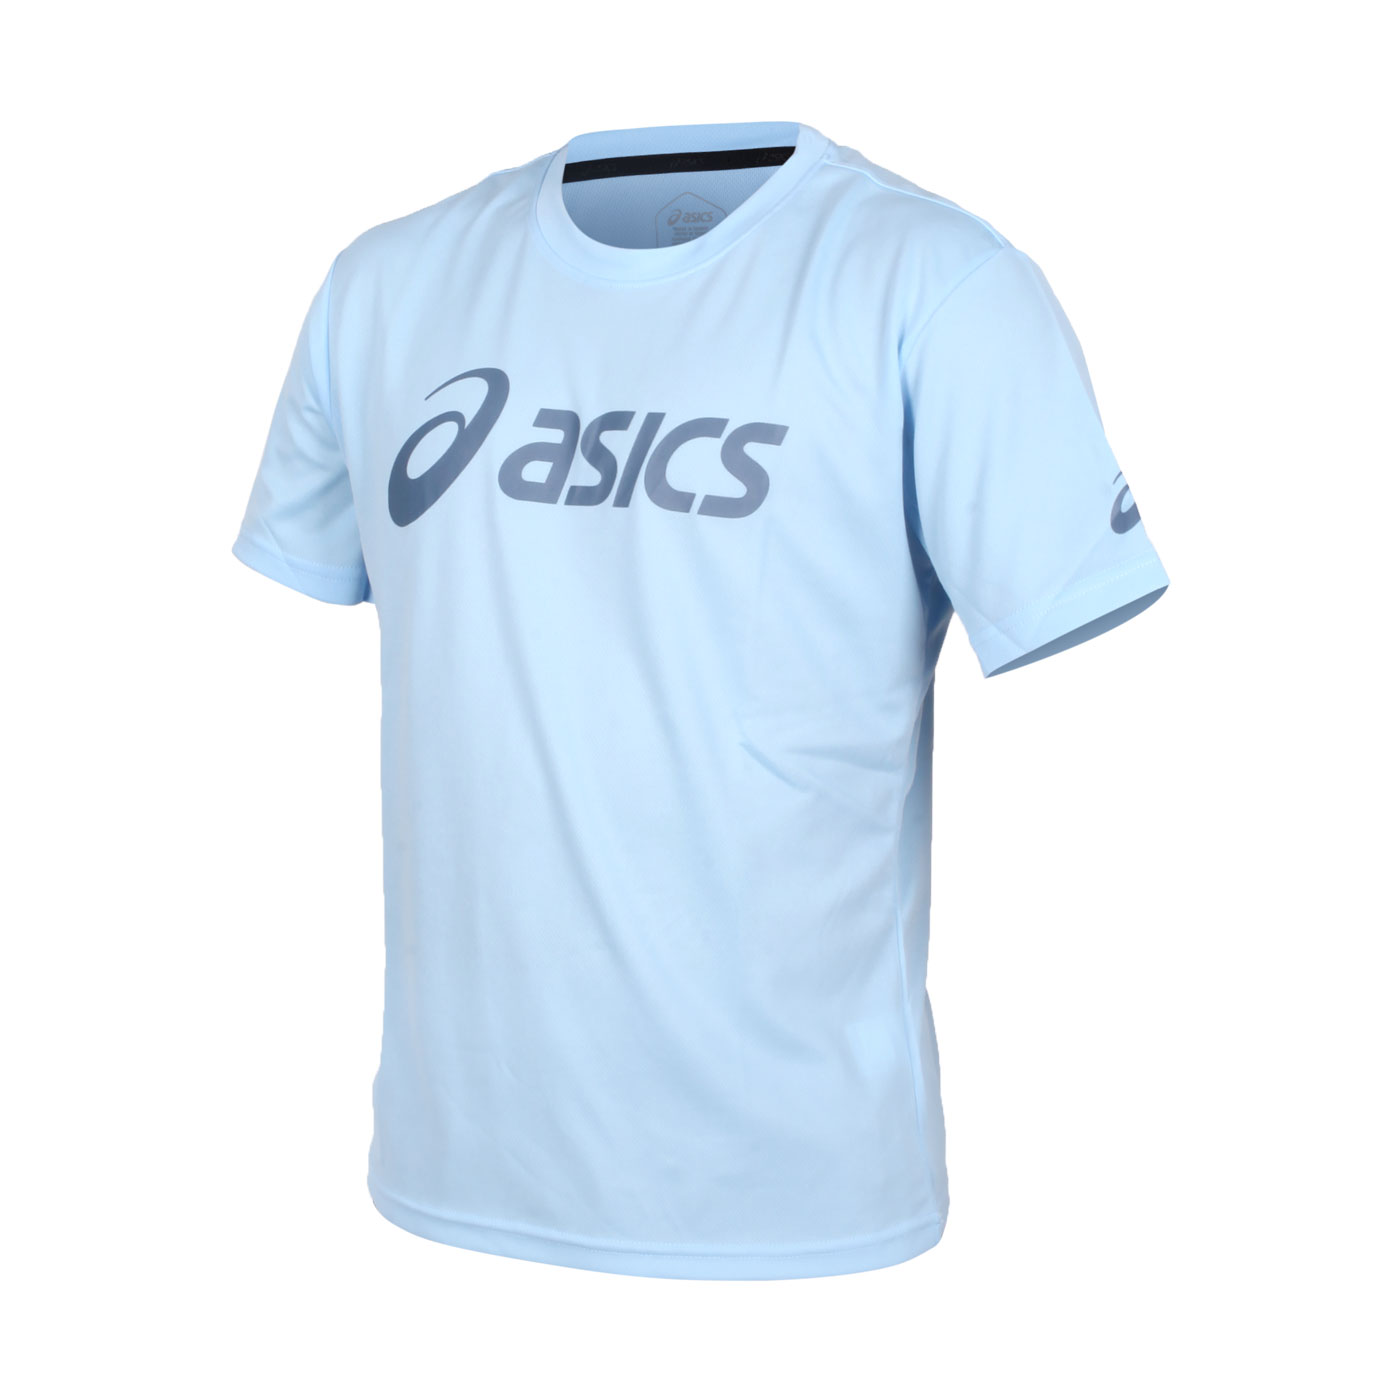 ASICS 短袖T恤  2033B666-400 - 馬卡龍藍